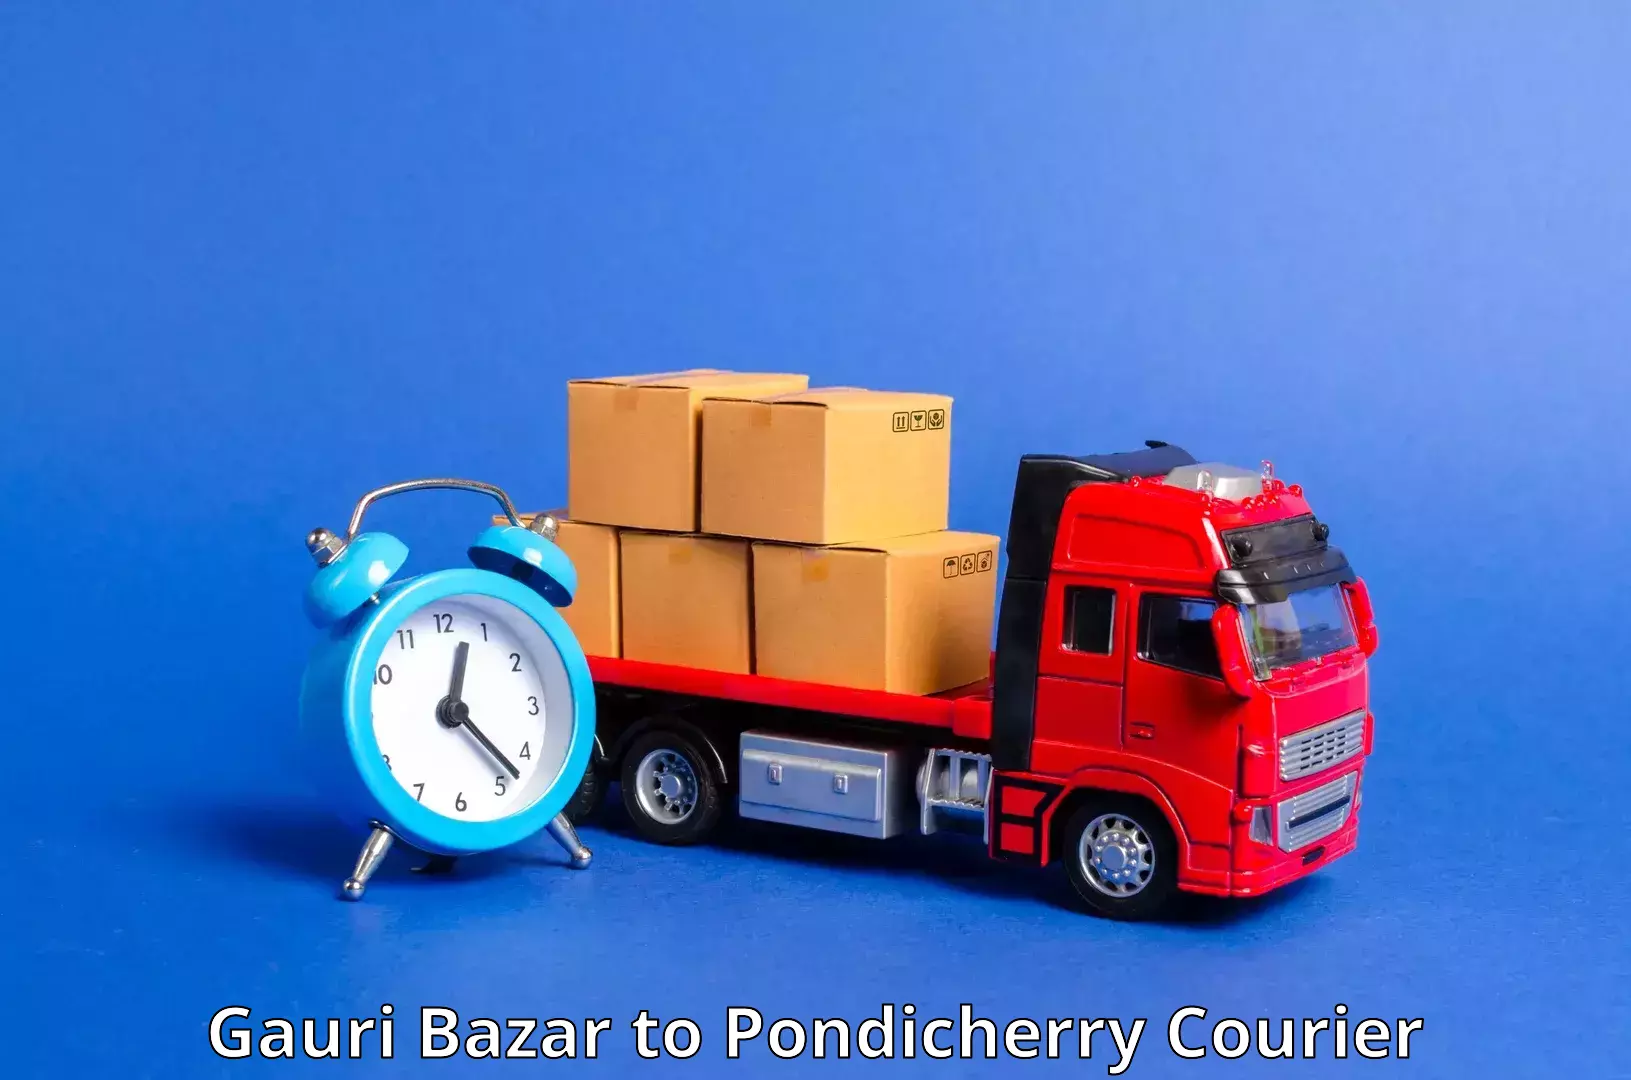 Weekend courier service Gauri Bazar to Pondicherry University